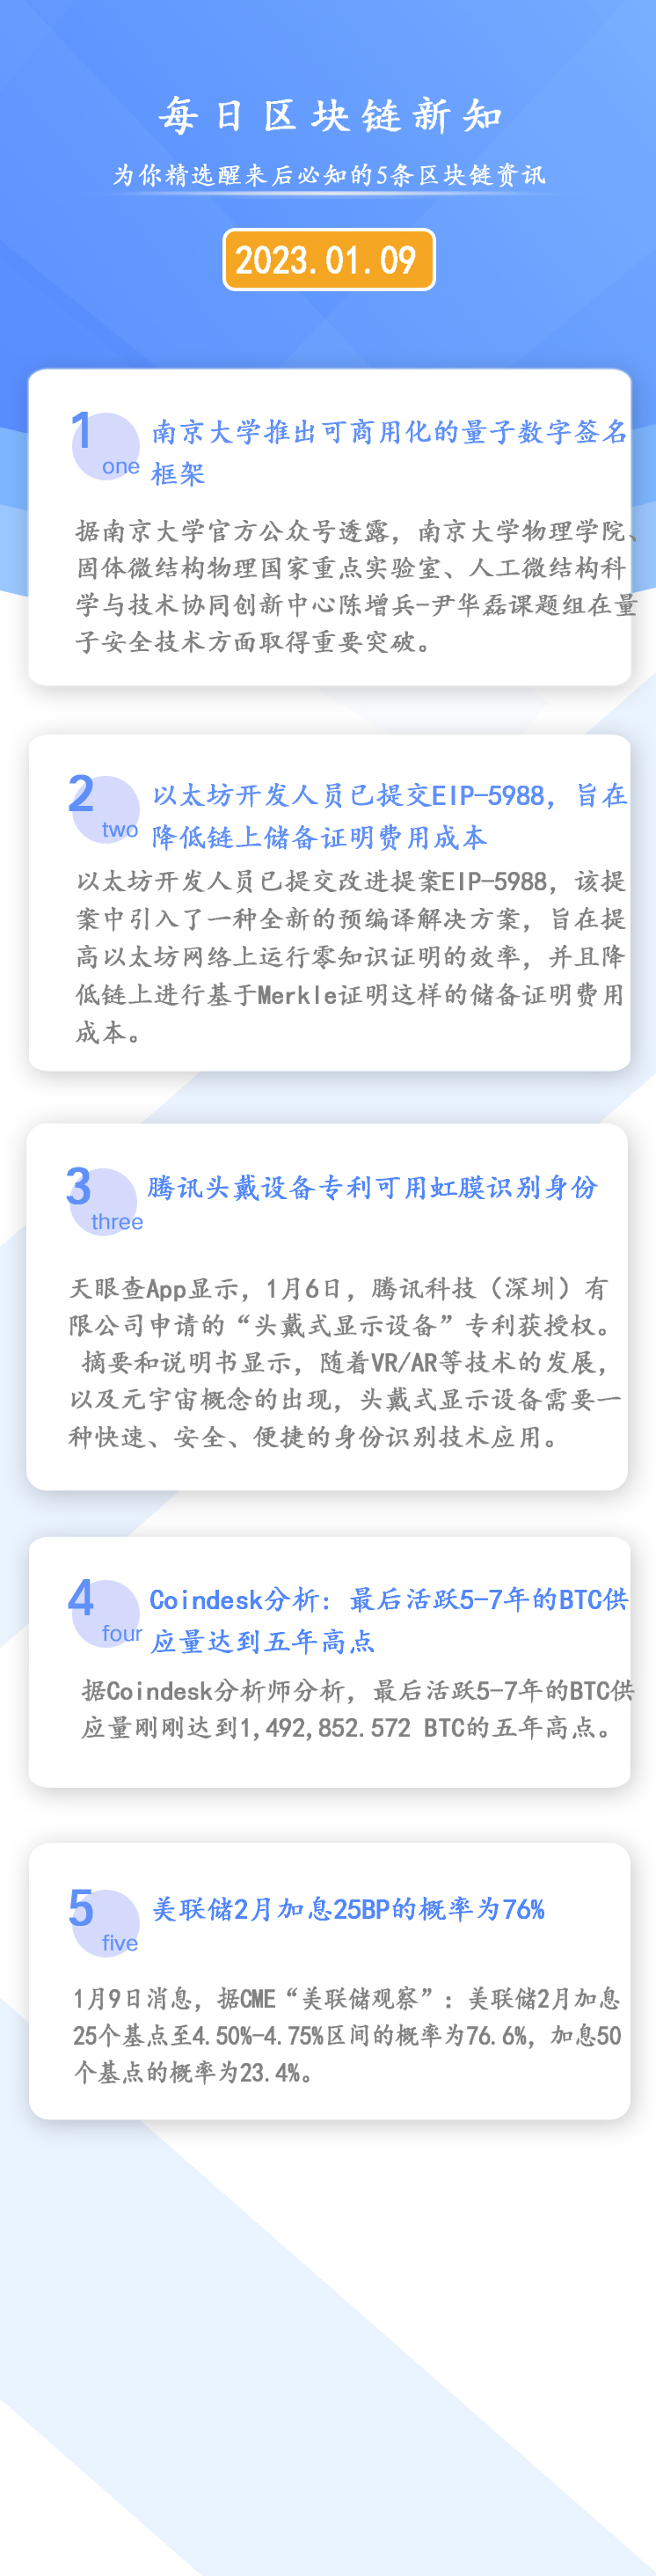 2023年01月09日《区块链必知天天》南京大学推出商用量子数字签名框架